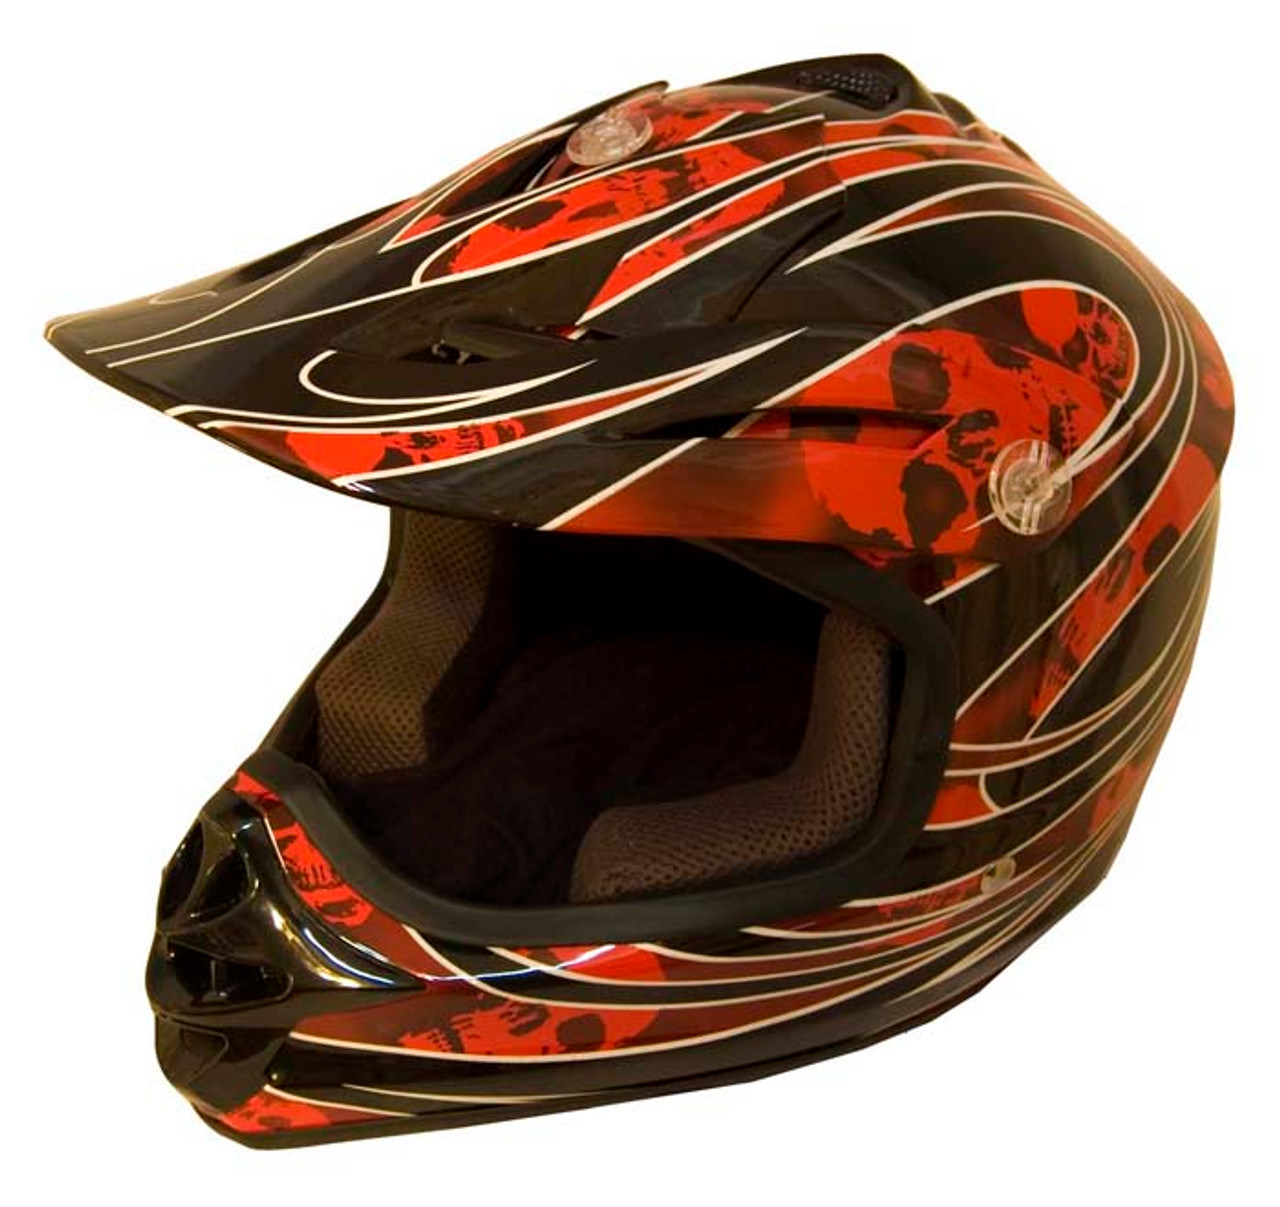 DOT Certified REDG Kids MX Motocross Helmet - Motorcycle ATV Helmet